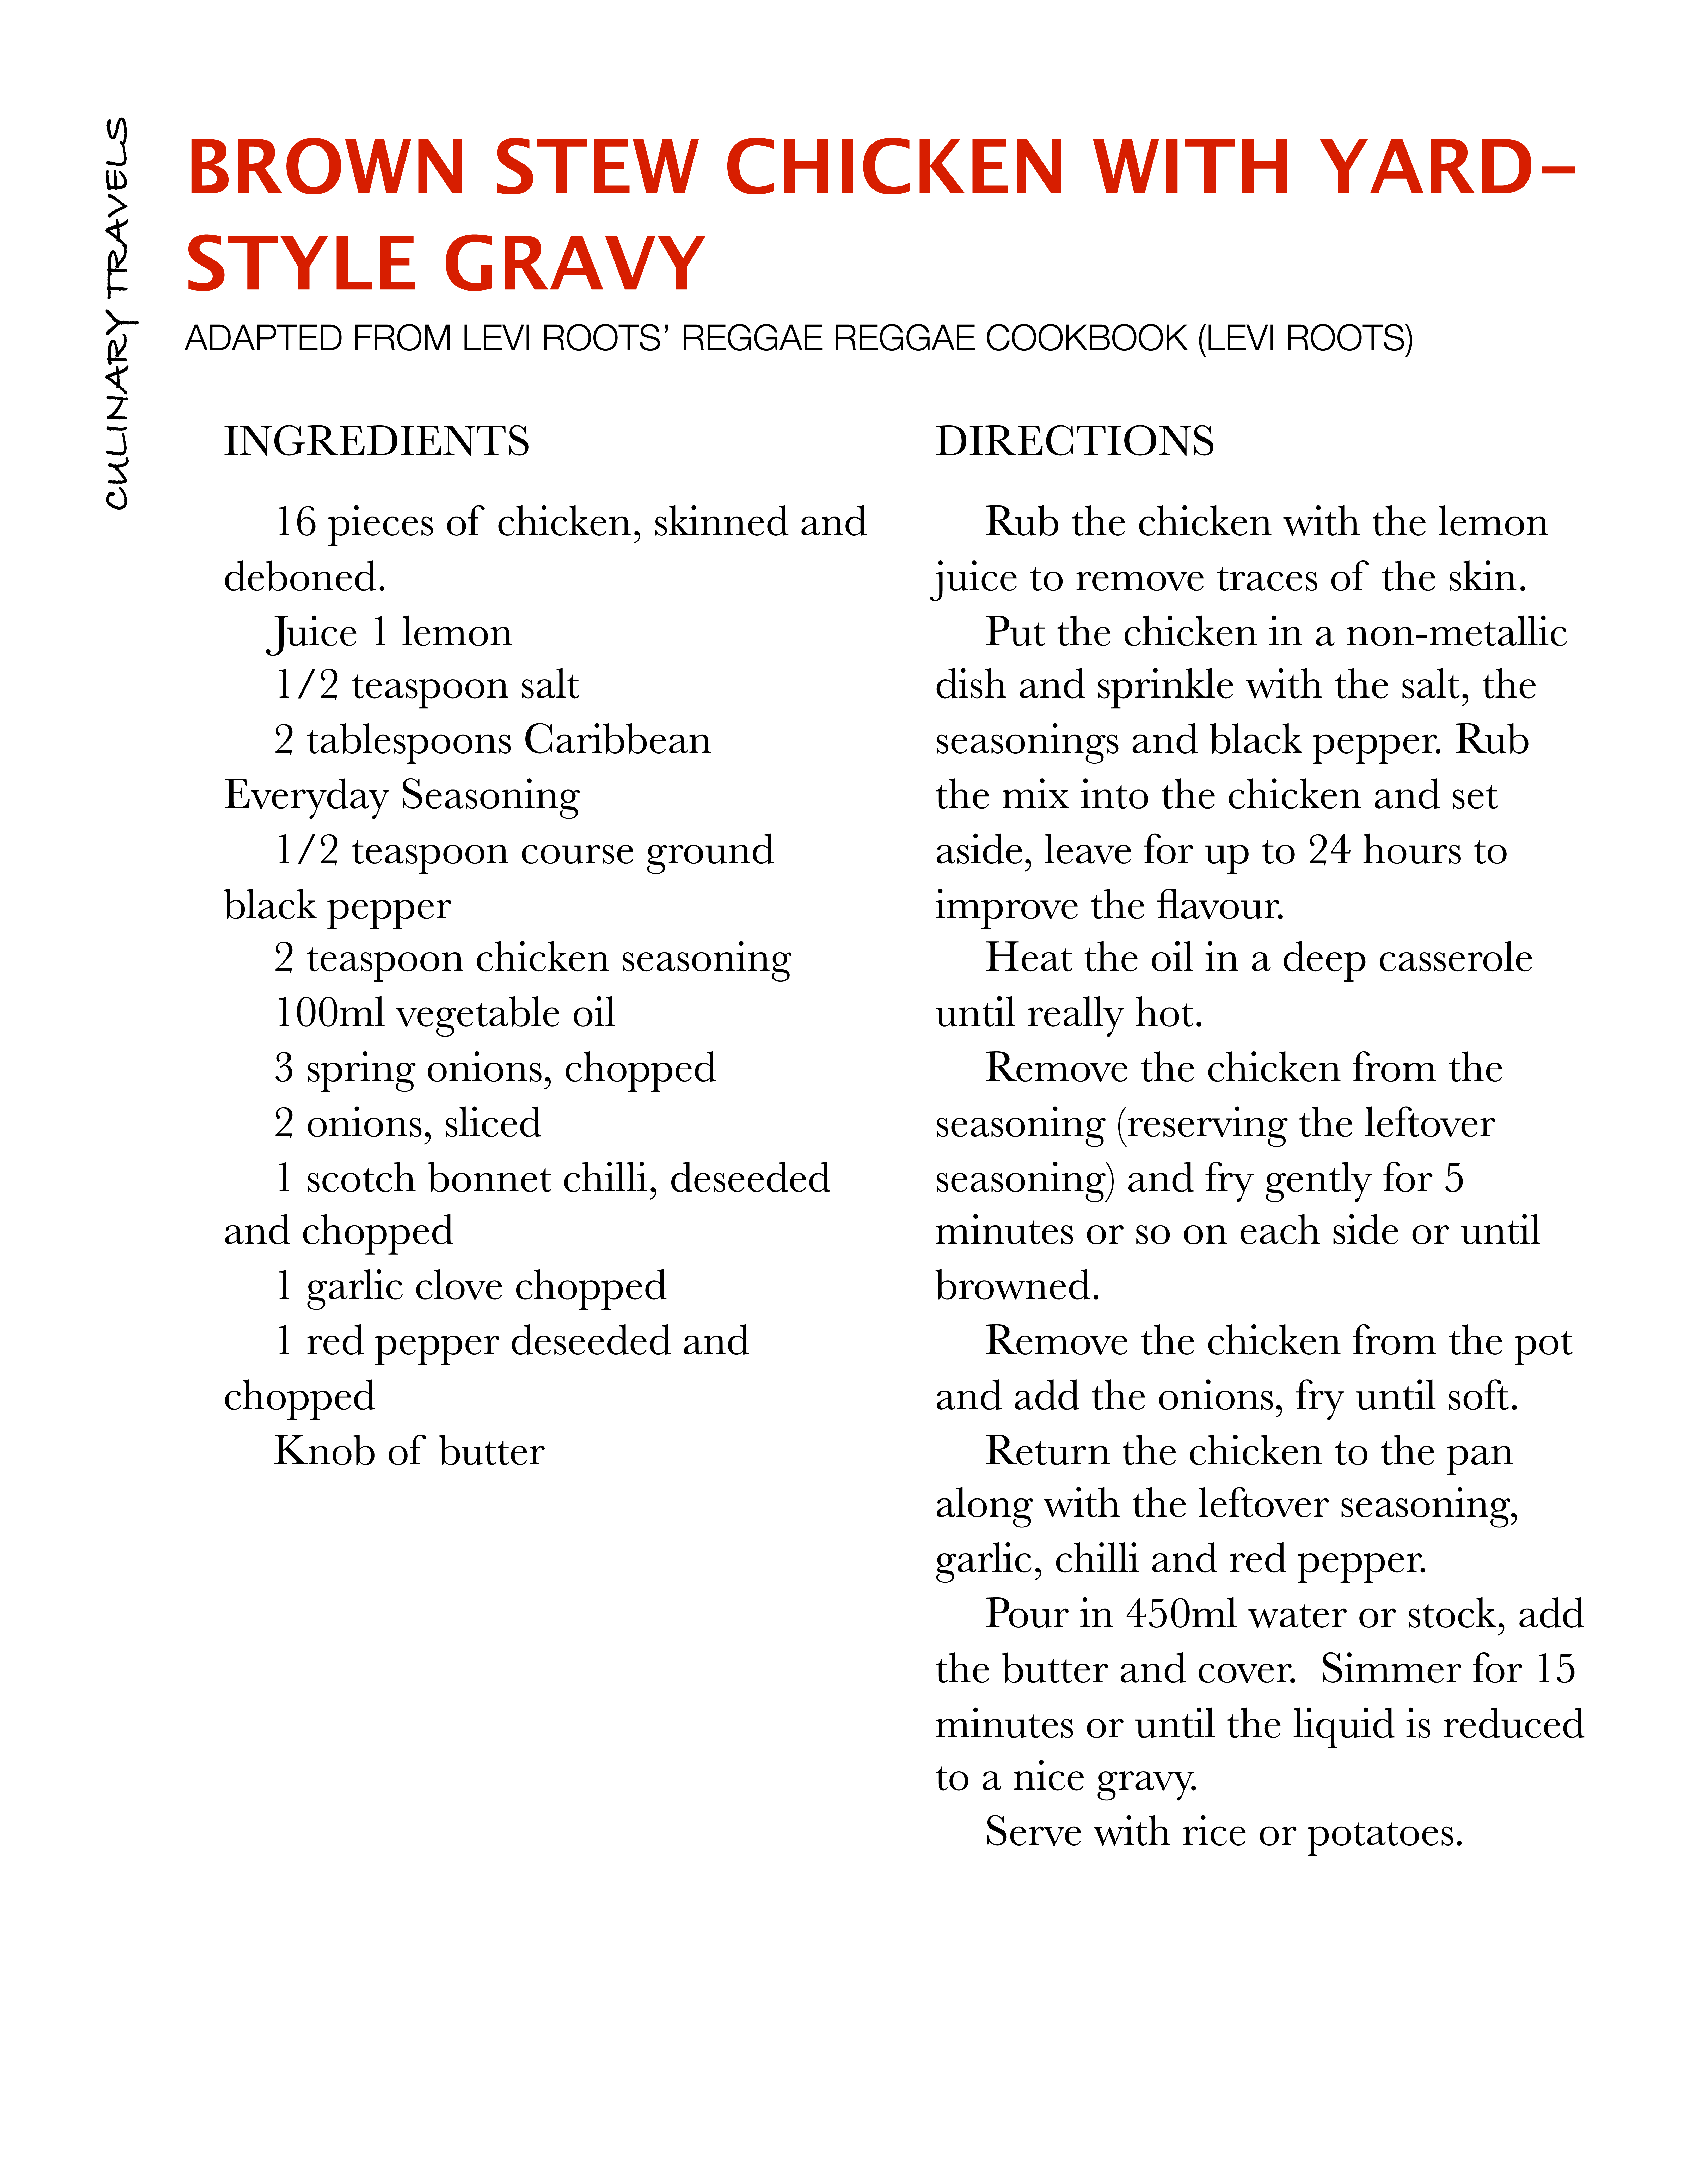 Brown Stew Chicken with Yard-Style Gravy | Blog